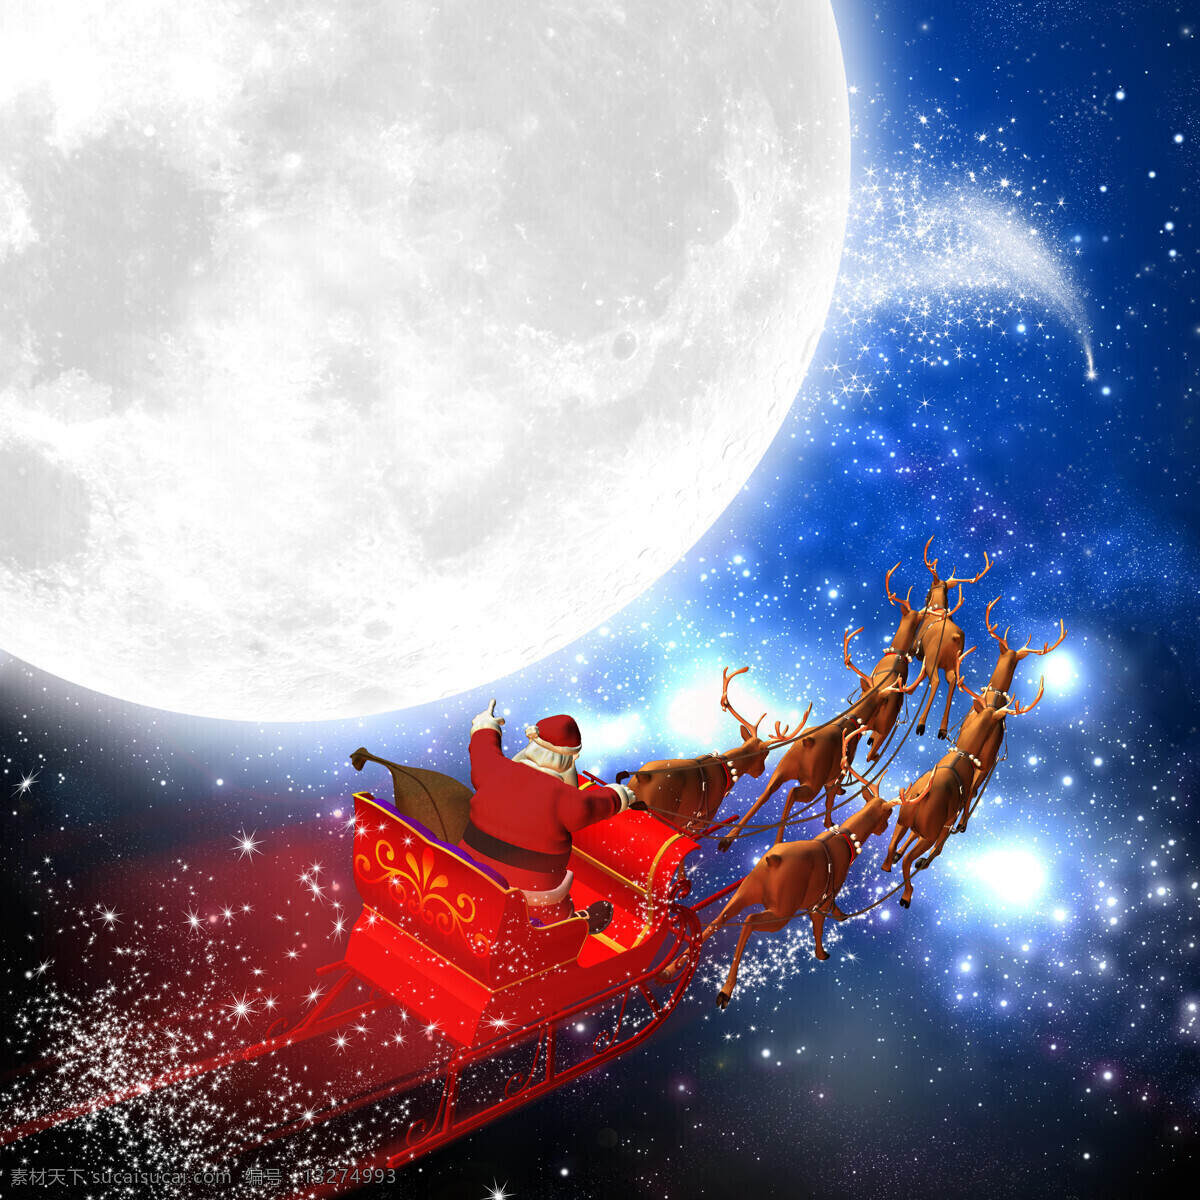 圣诞 圣诞老人 雪橇 月亮 天空 卡通 麋鹿 雪鹿 雪车 星光 地球 雪花 圣诞树 星星 圣诞背景 圣诞节 圣诞快乐 节日庆祝 文化艺术